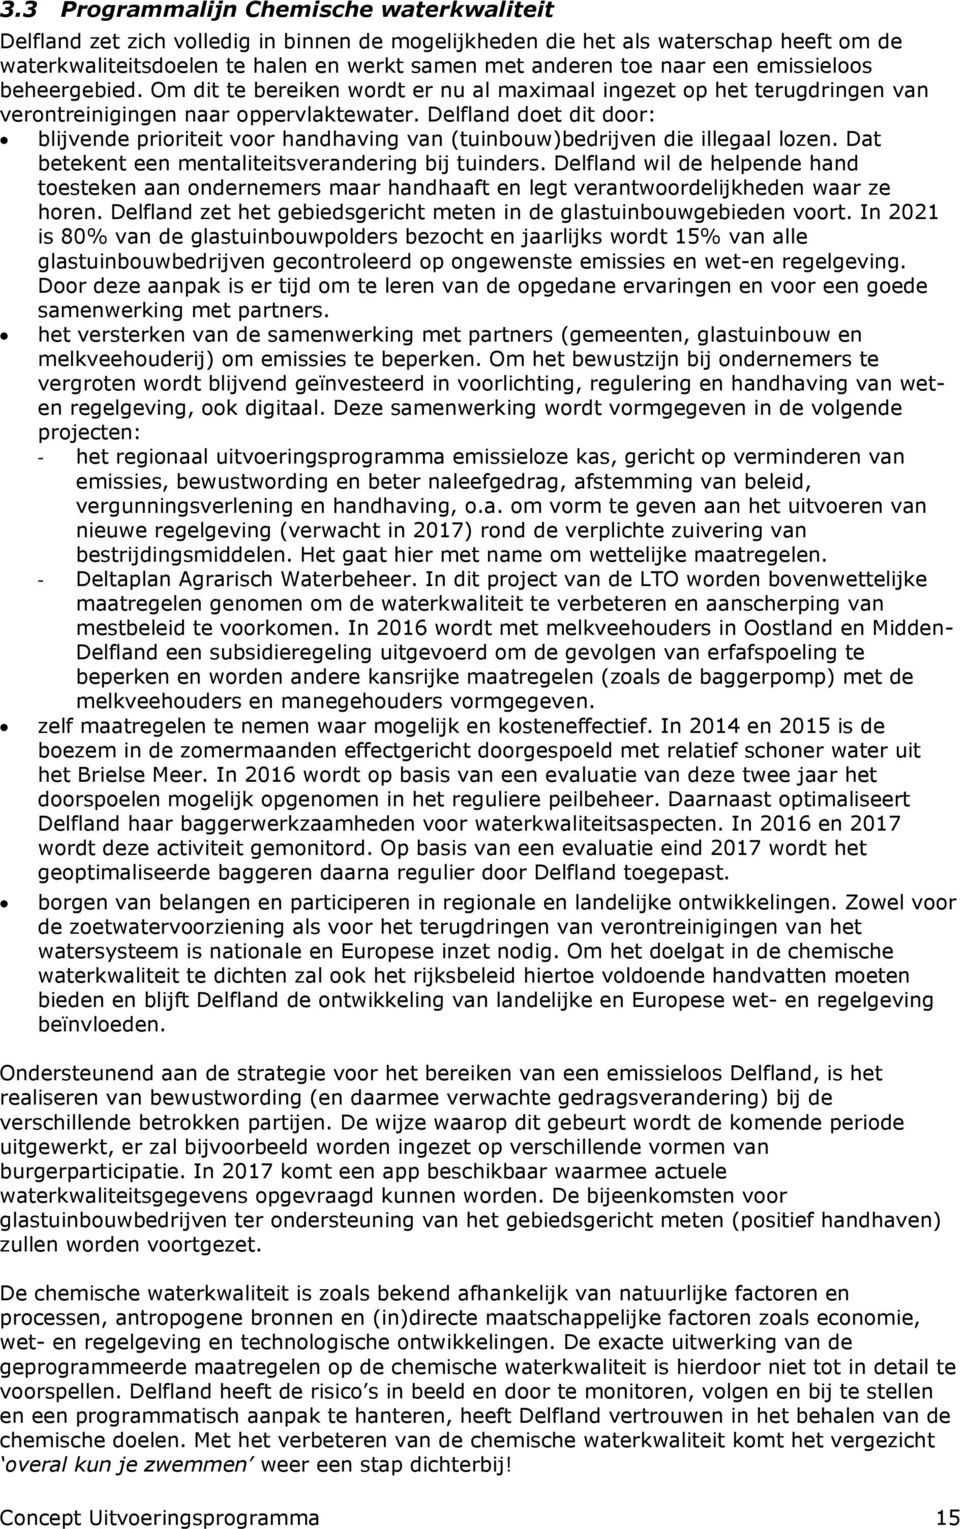 Delfland doet dit door: blijvende prioriteit voor handhaving van (tuinbouw)bedrijven die illegaal lozen. Dat betekent een mentaliteitsverandering bij tuinders.